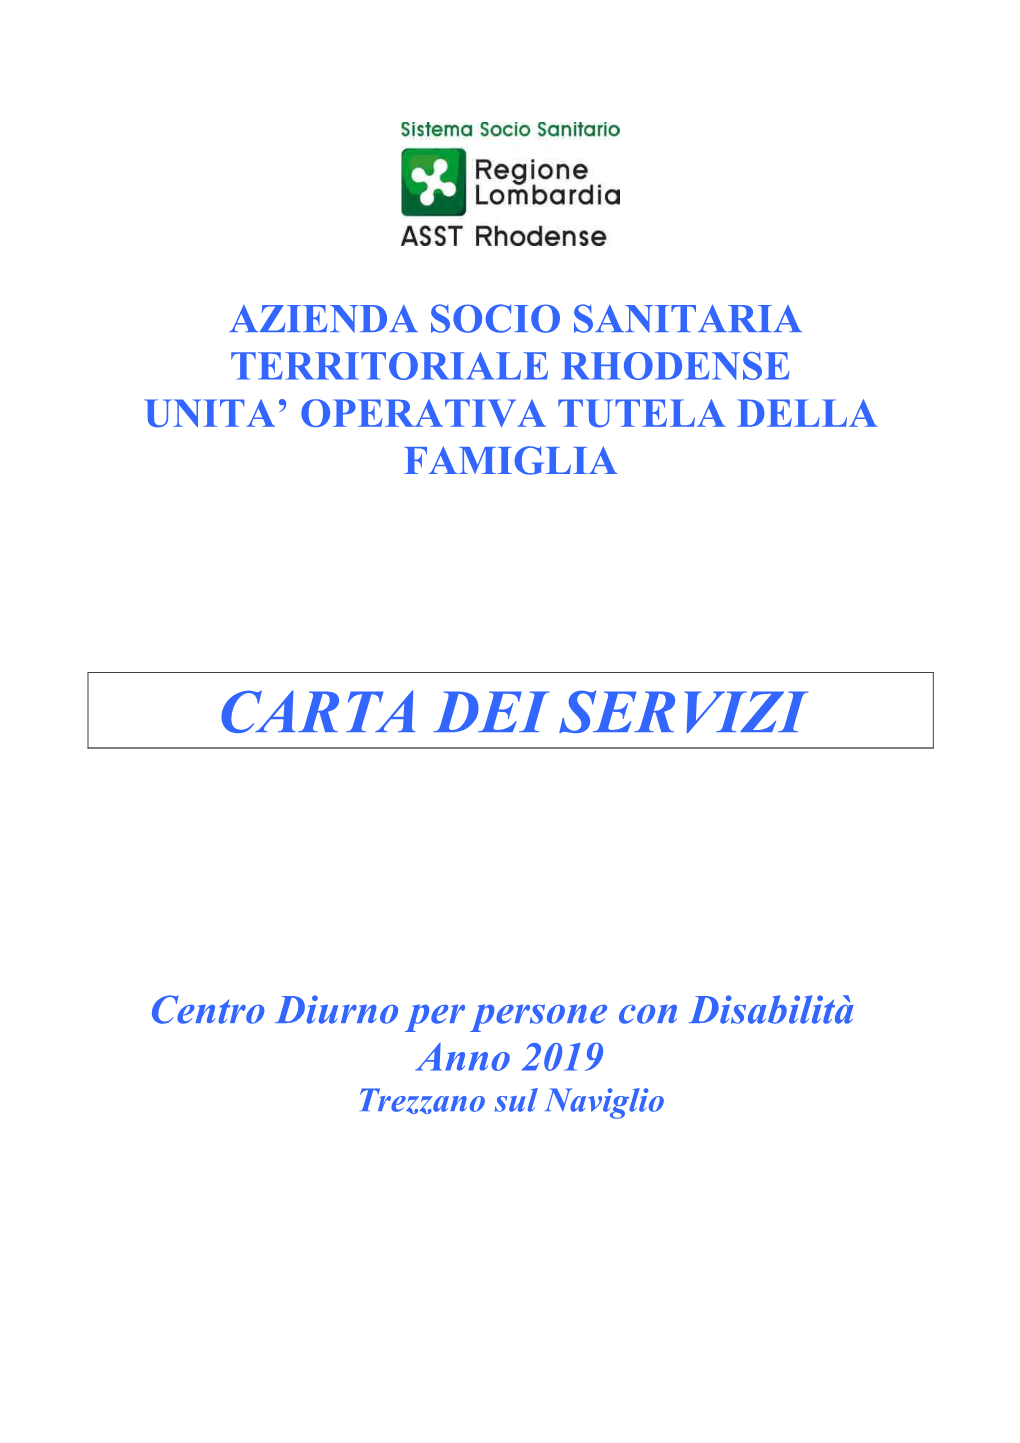 Carta Dei Servizi Cdd Trezzano 2019